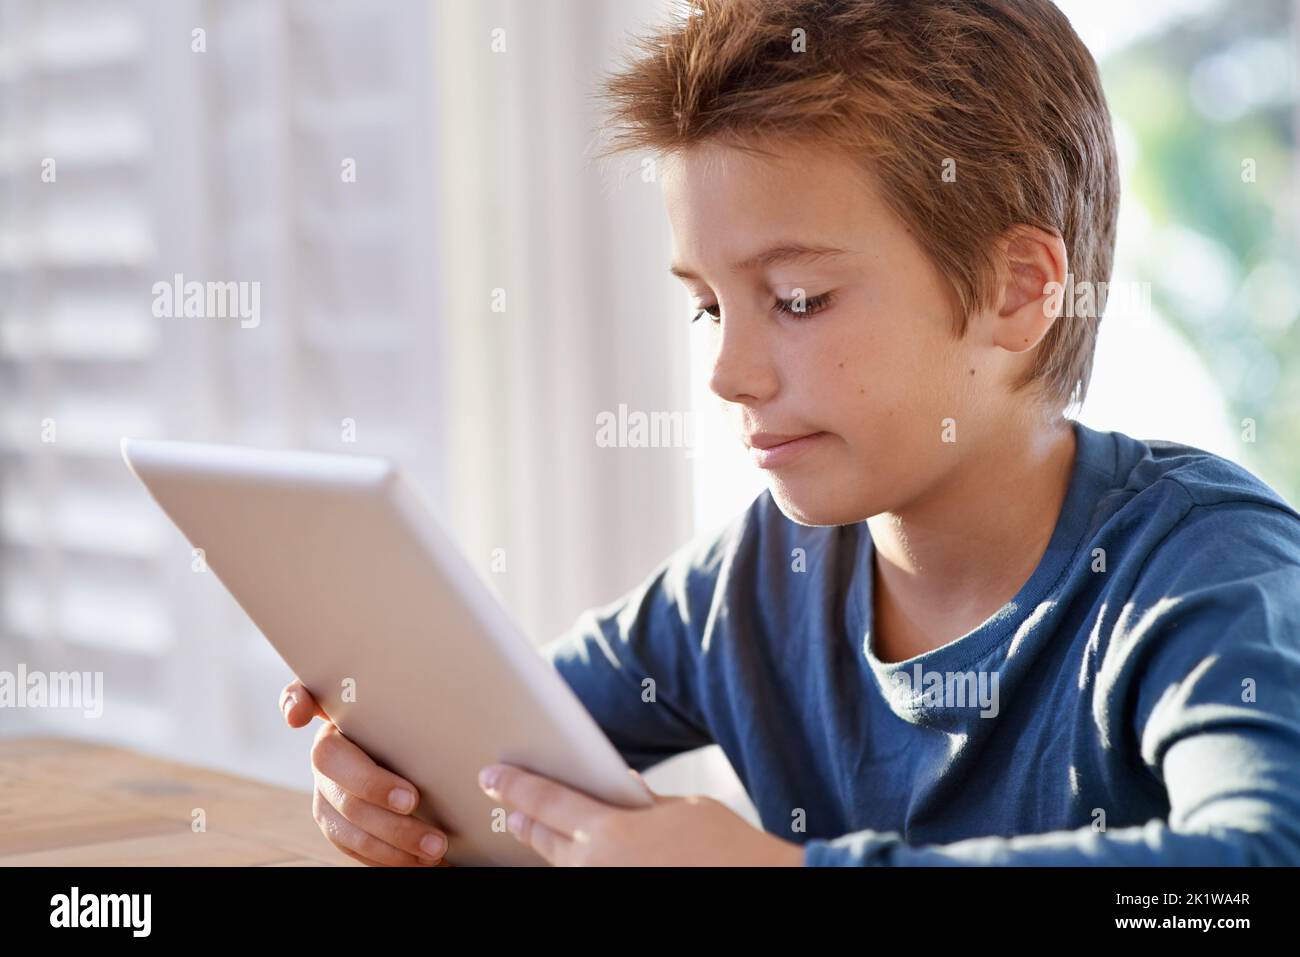 Un excellent outil d'apprentissage. Un jeune garçon utilisant une tablette numérique pour faire ses devoirs. Banque D'Images